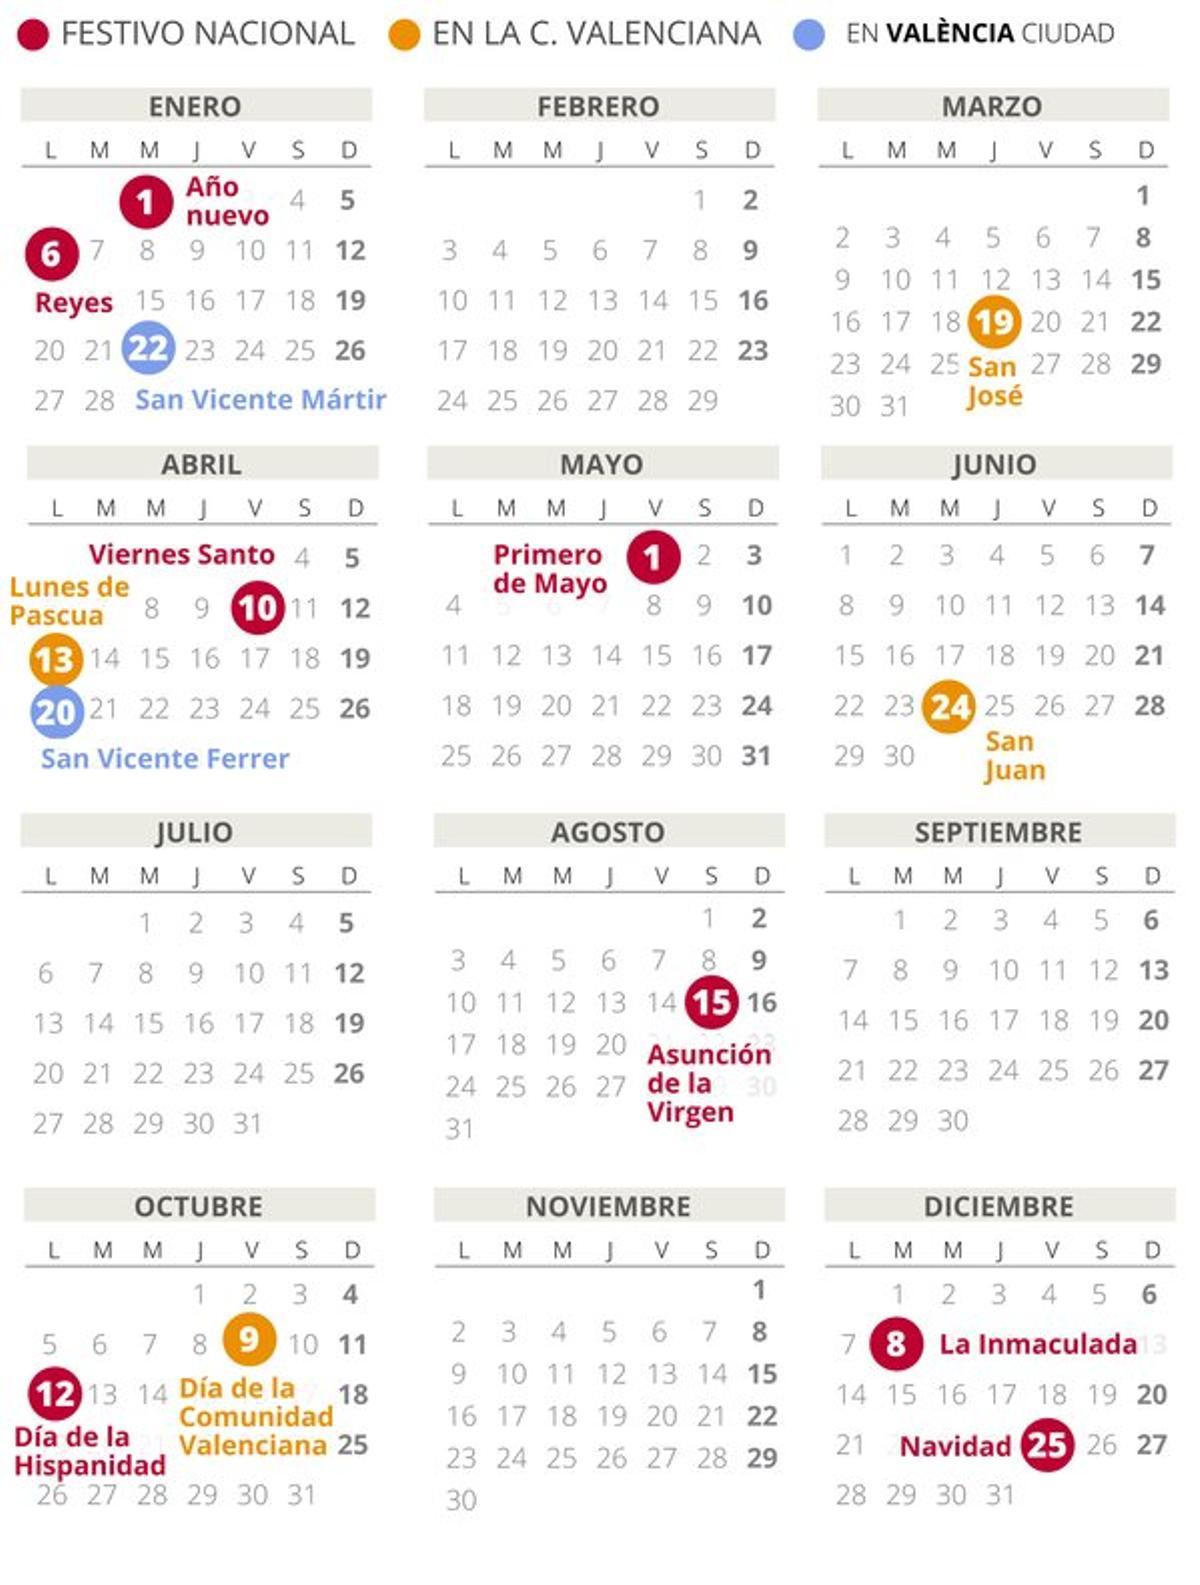 Calendario laboral de Valencia del 2020.